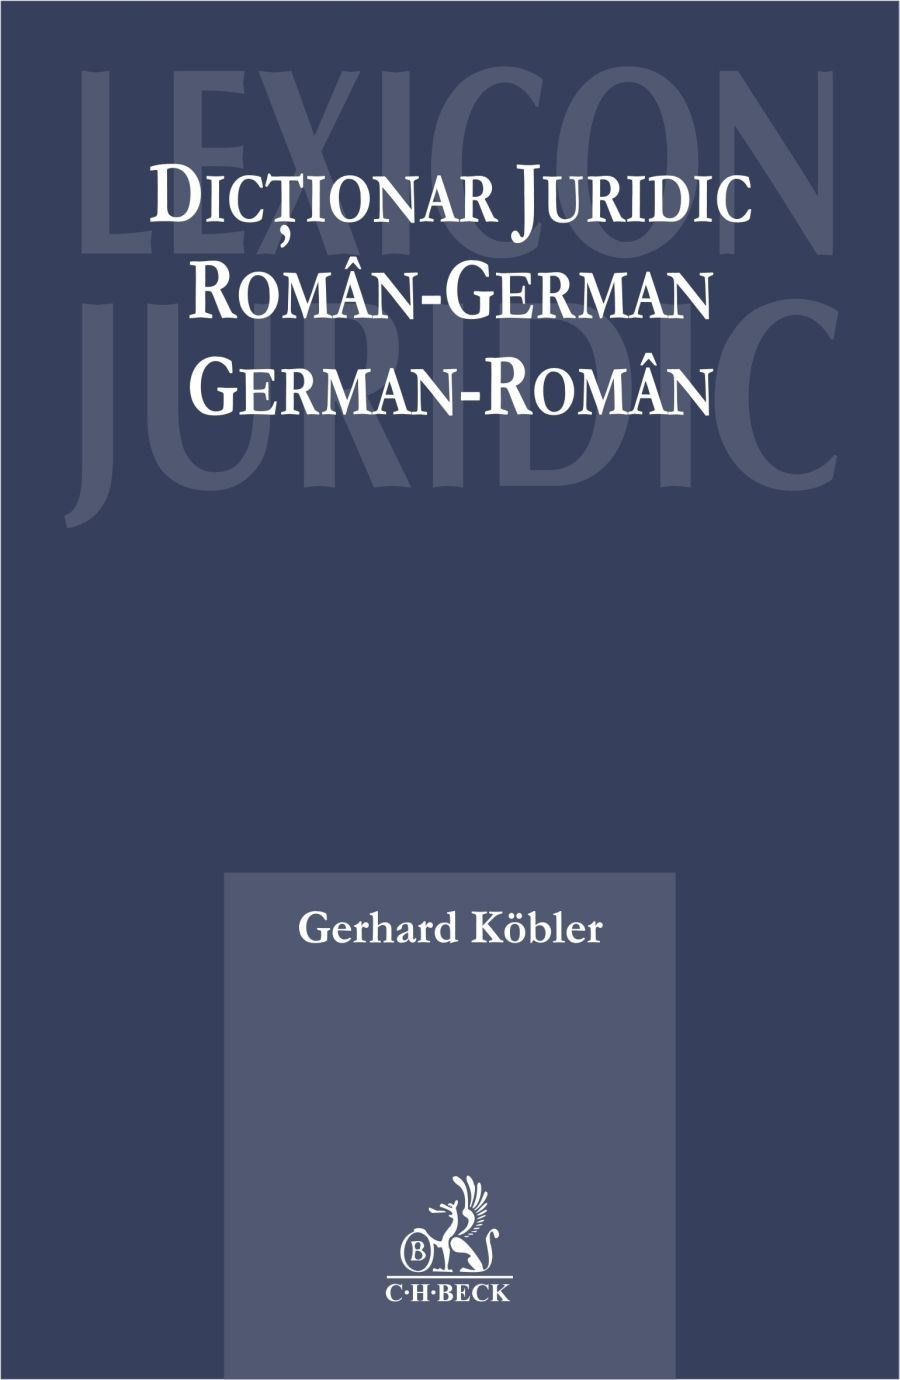 Dictionar juridic roman-german, german-roman | Gerhard Kobler C.H. Beck poza bestsellers.ro